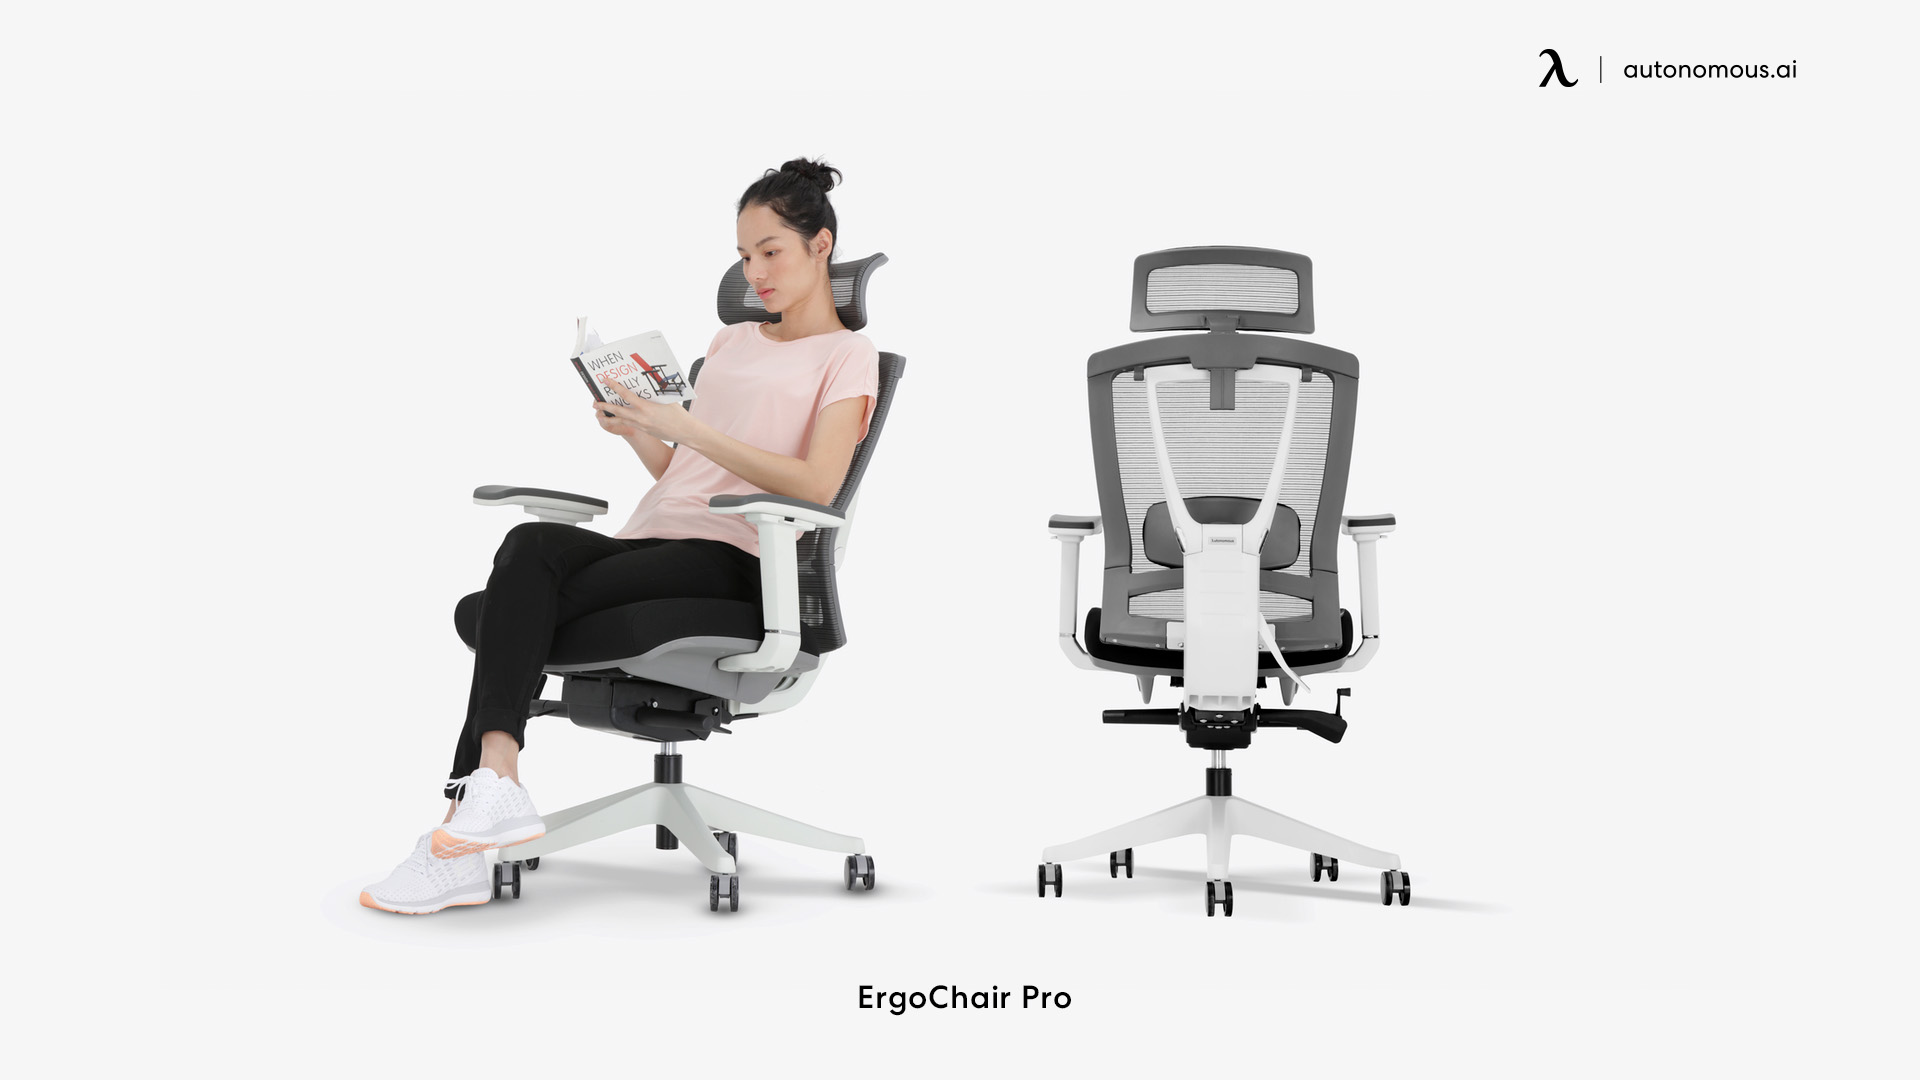 ErgoChair Pro best chair for herniated disc